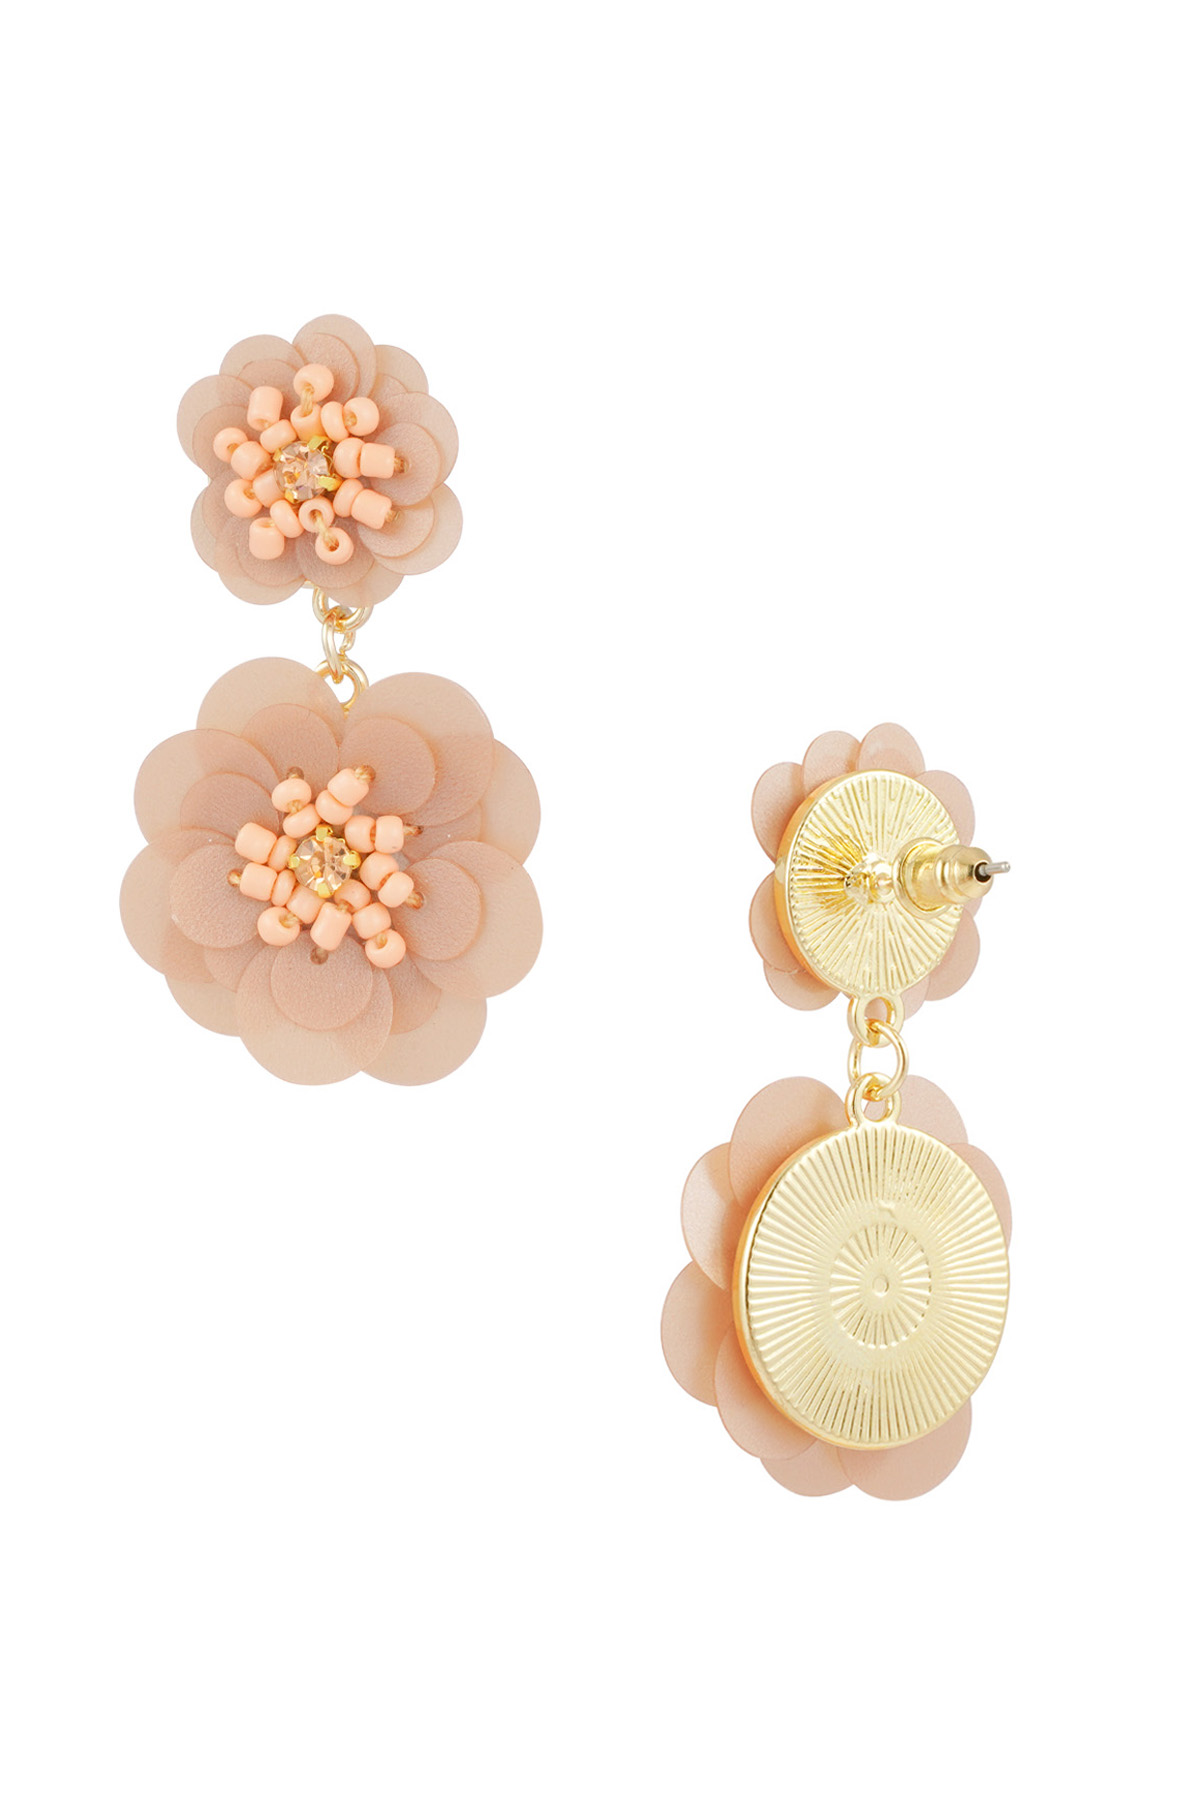 Boucles d'oreilles saison florale - champagne h5 